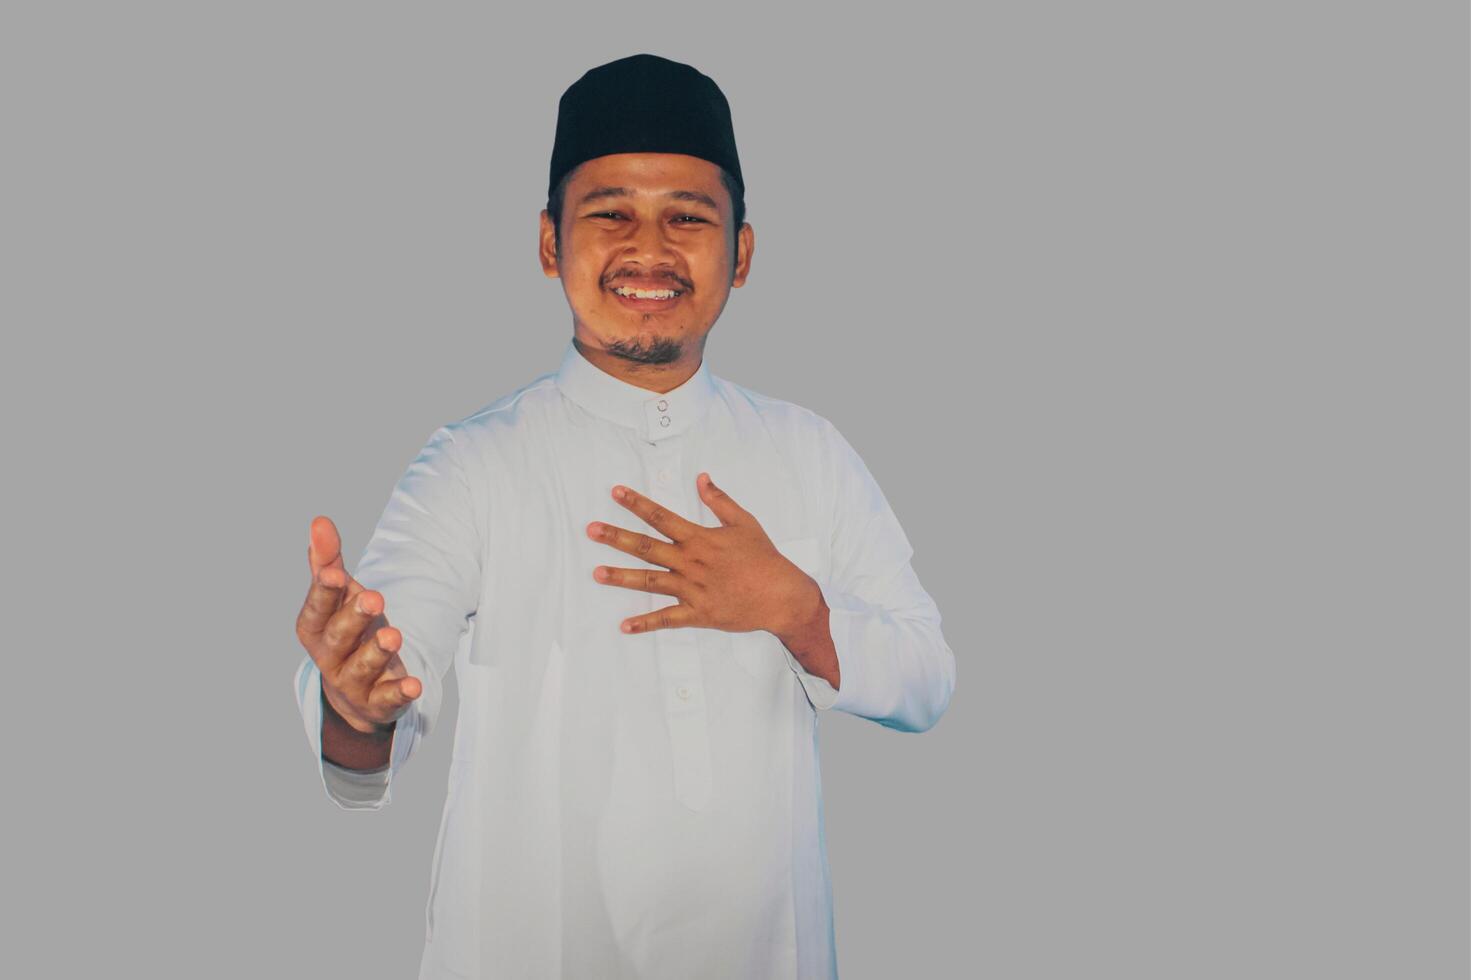 musulman asiatique homme souriant amical lorsque offre main secouer photo